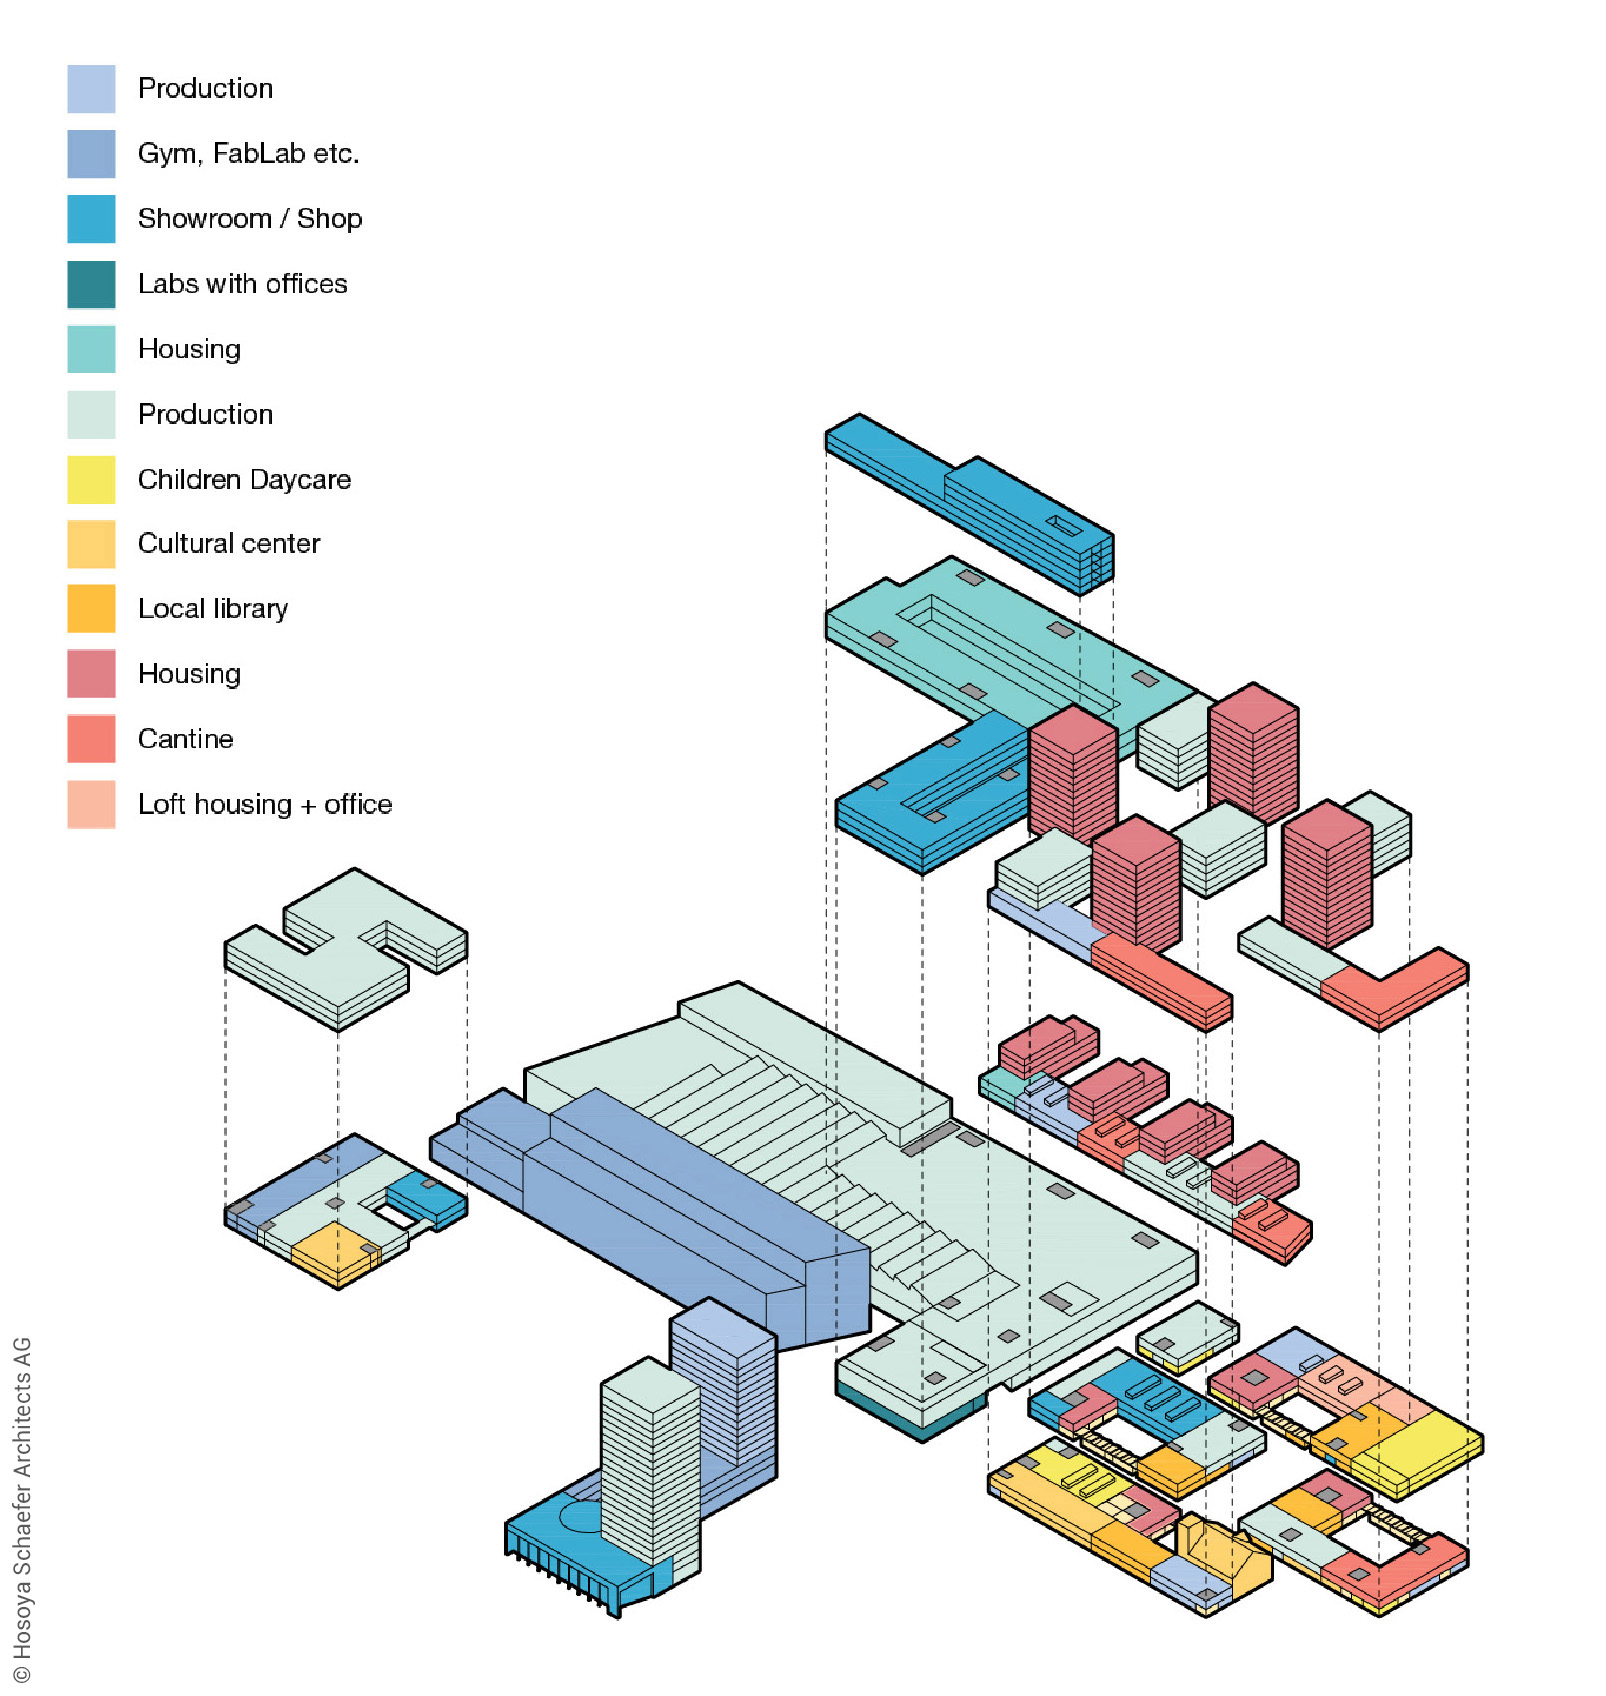 TechCluster VZug Darstellung des Nutzungsmix in Form einer farbigen Explosionszeichnung des Quartiers